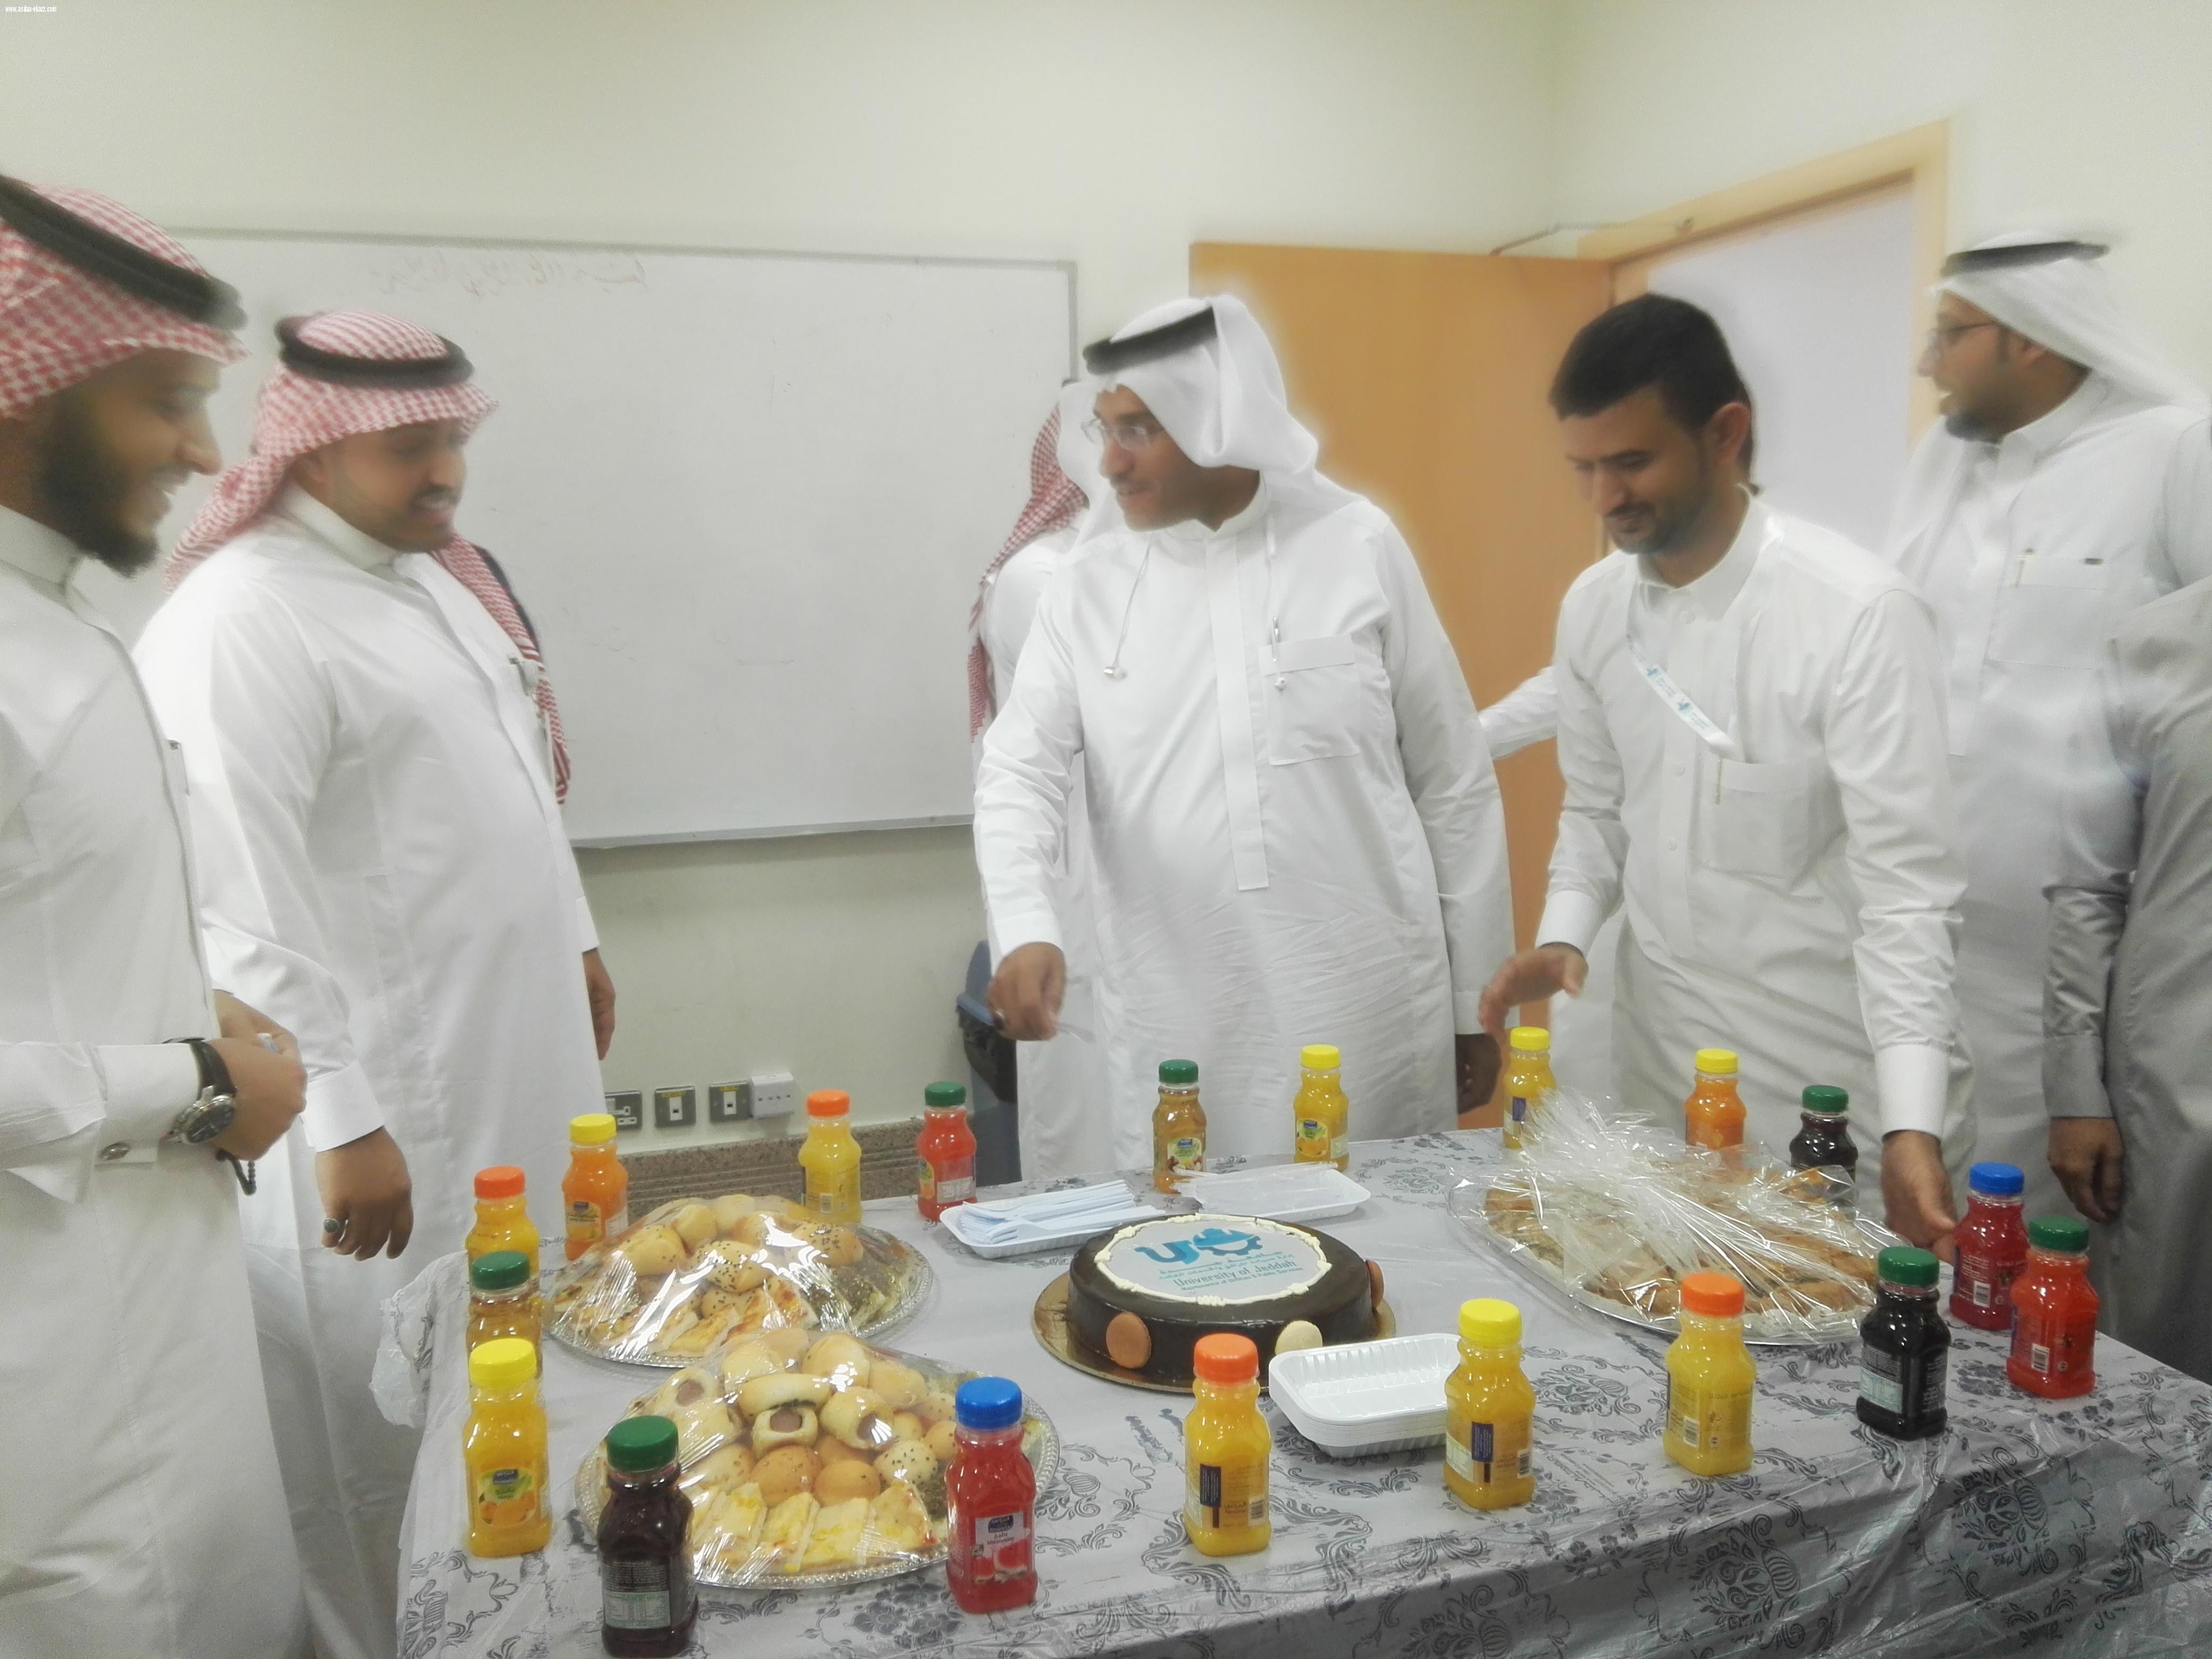 إحتفال موظفوا قسم صيانة المرافق والخدمات العامه بجامعة جدة بتجديد تكليف م. محمد معدلي مديرا للإدارة